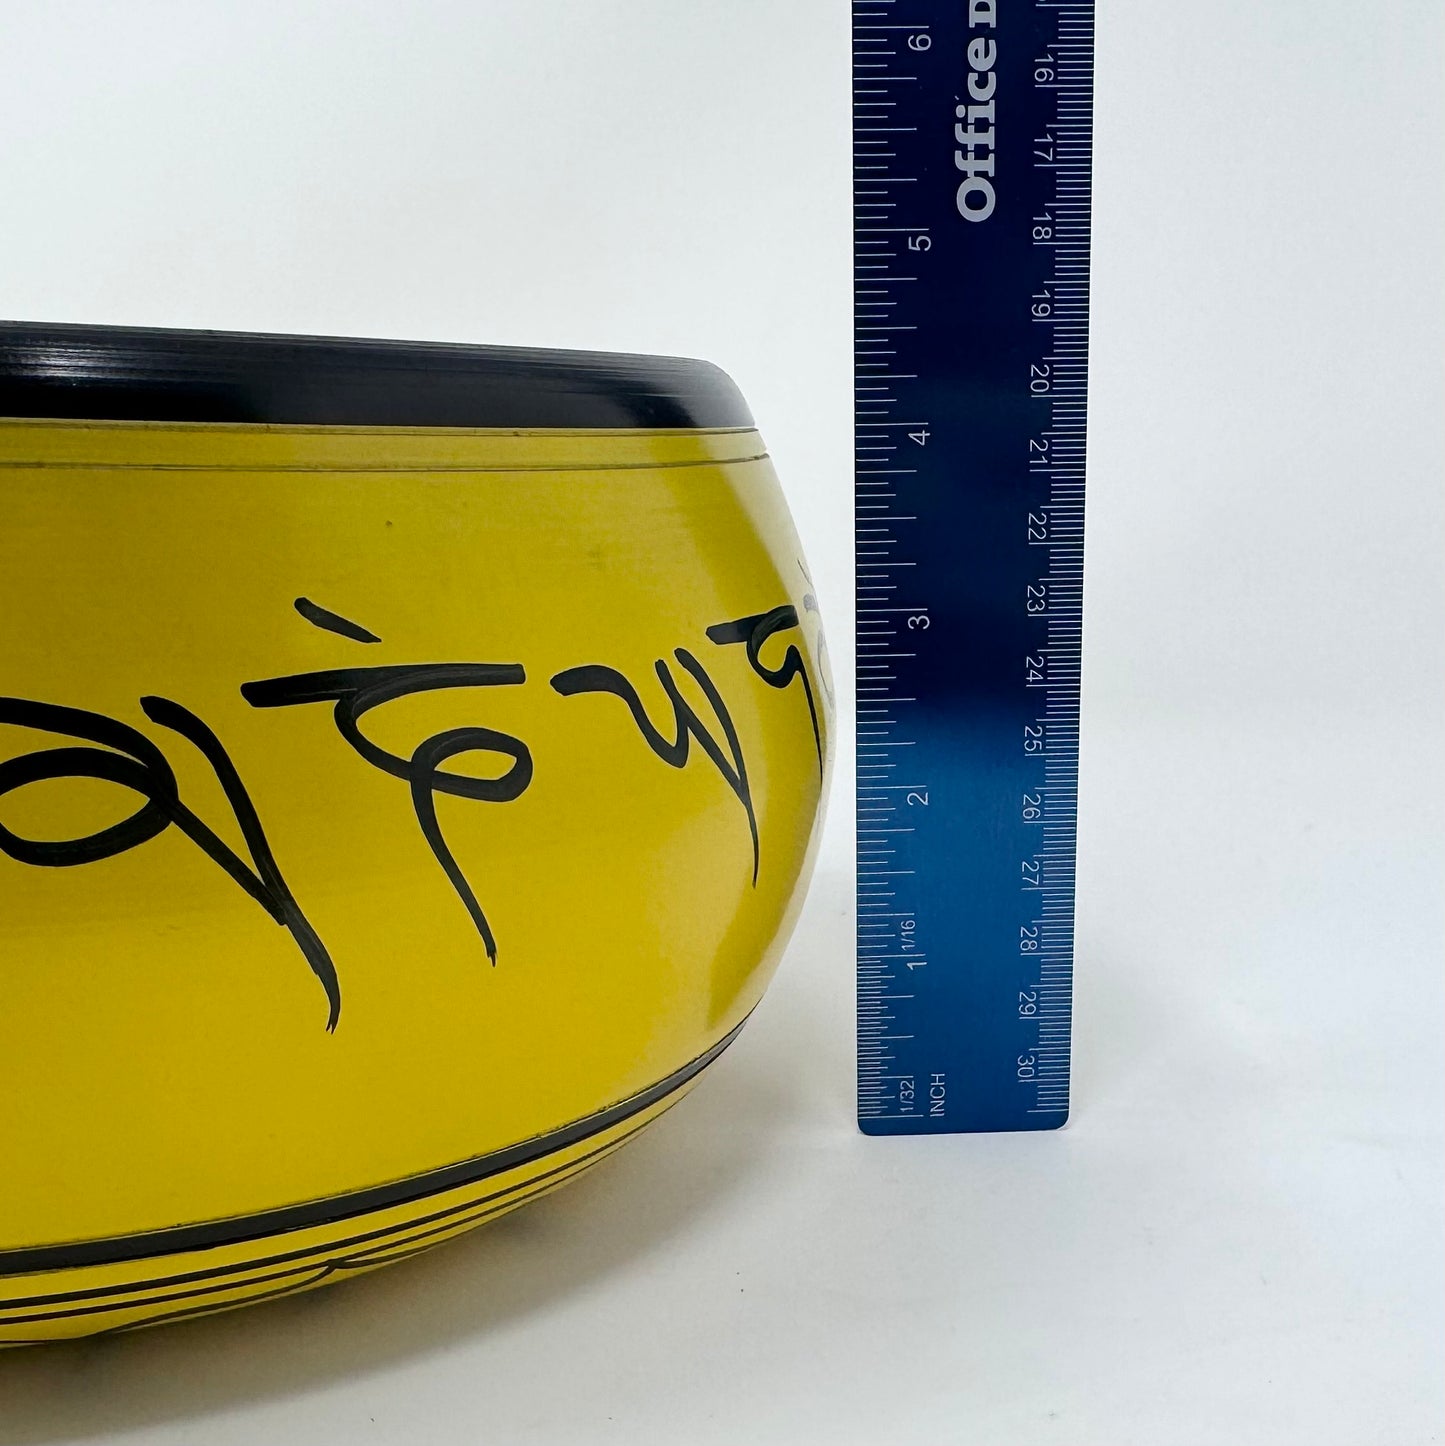 8” Diameter Yellow Singing Bowl